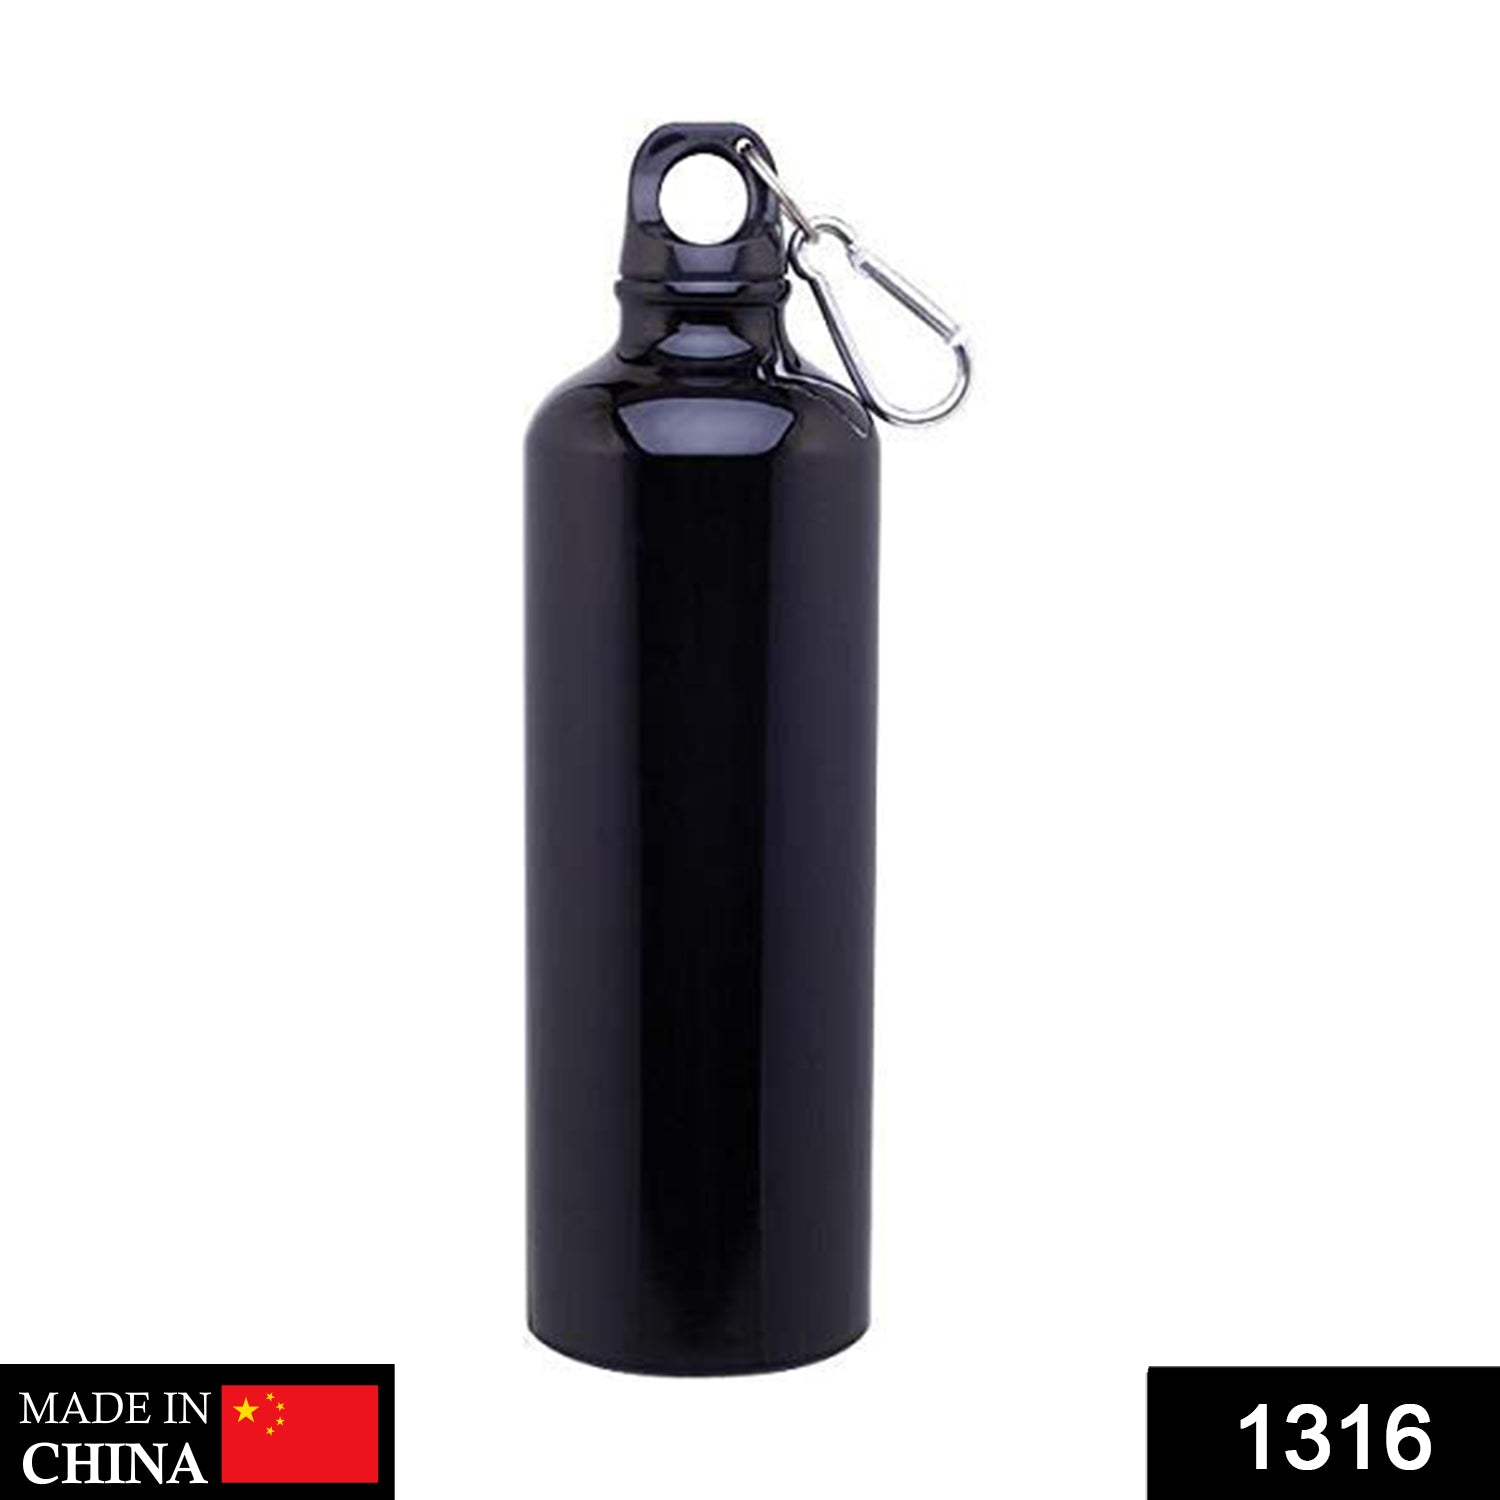 Stainless Steel Fancy Water Bottle (500 ml)